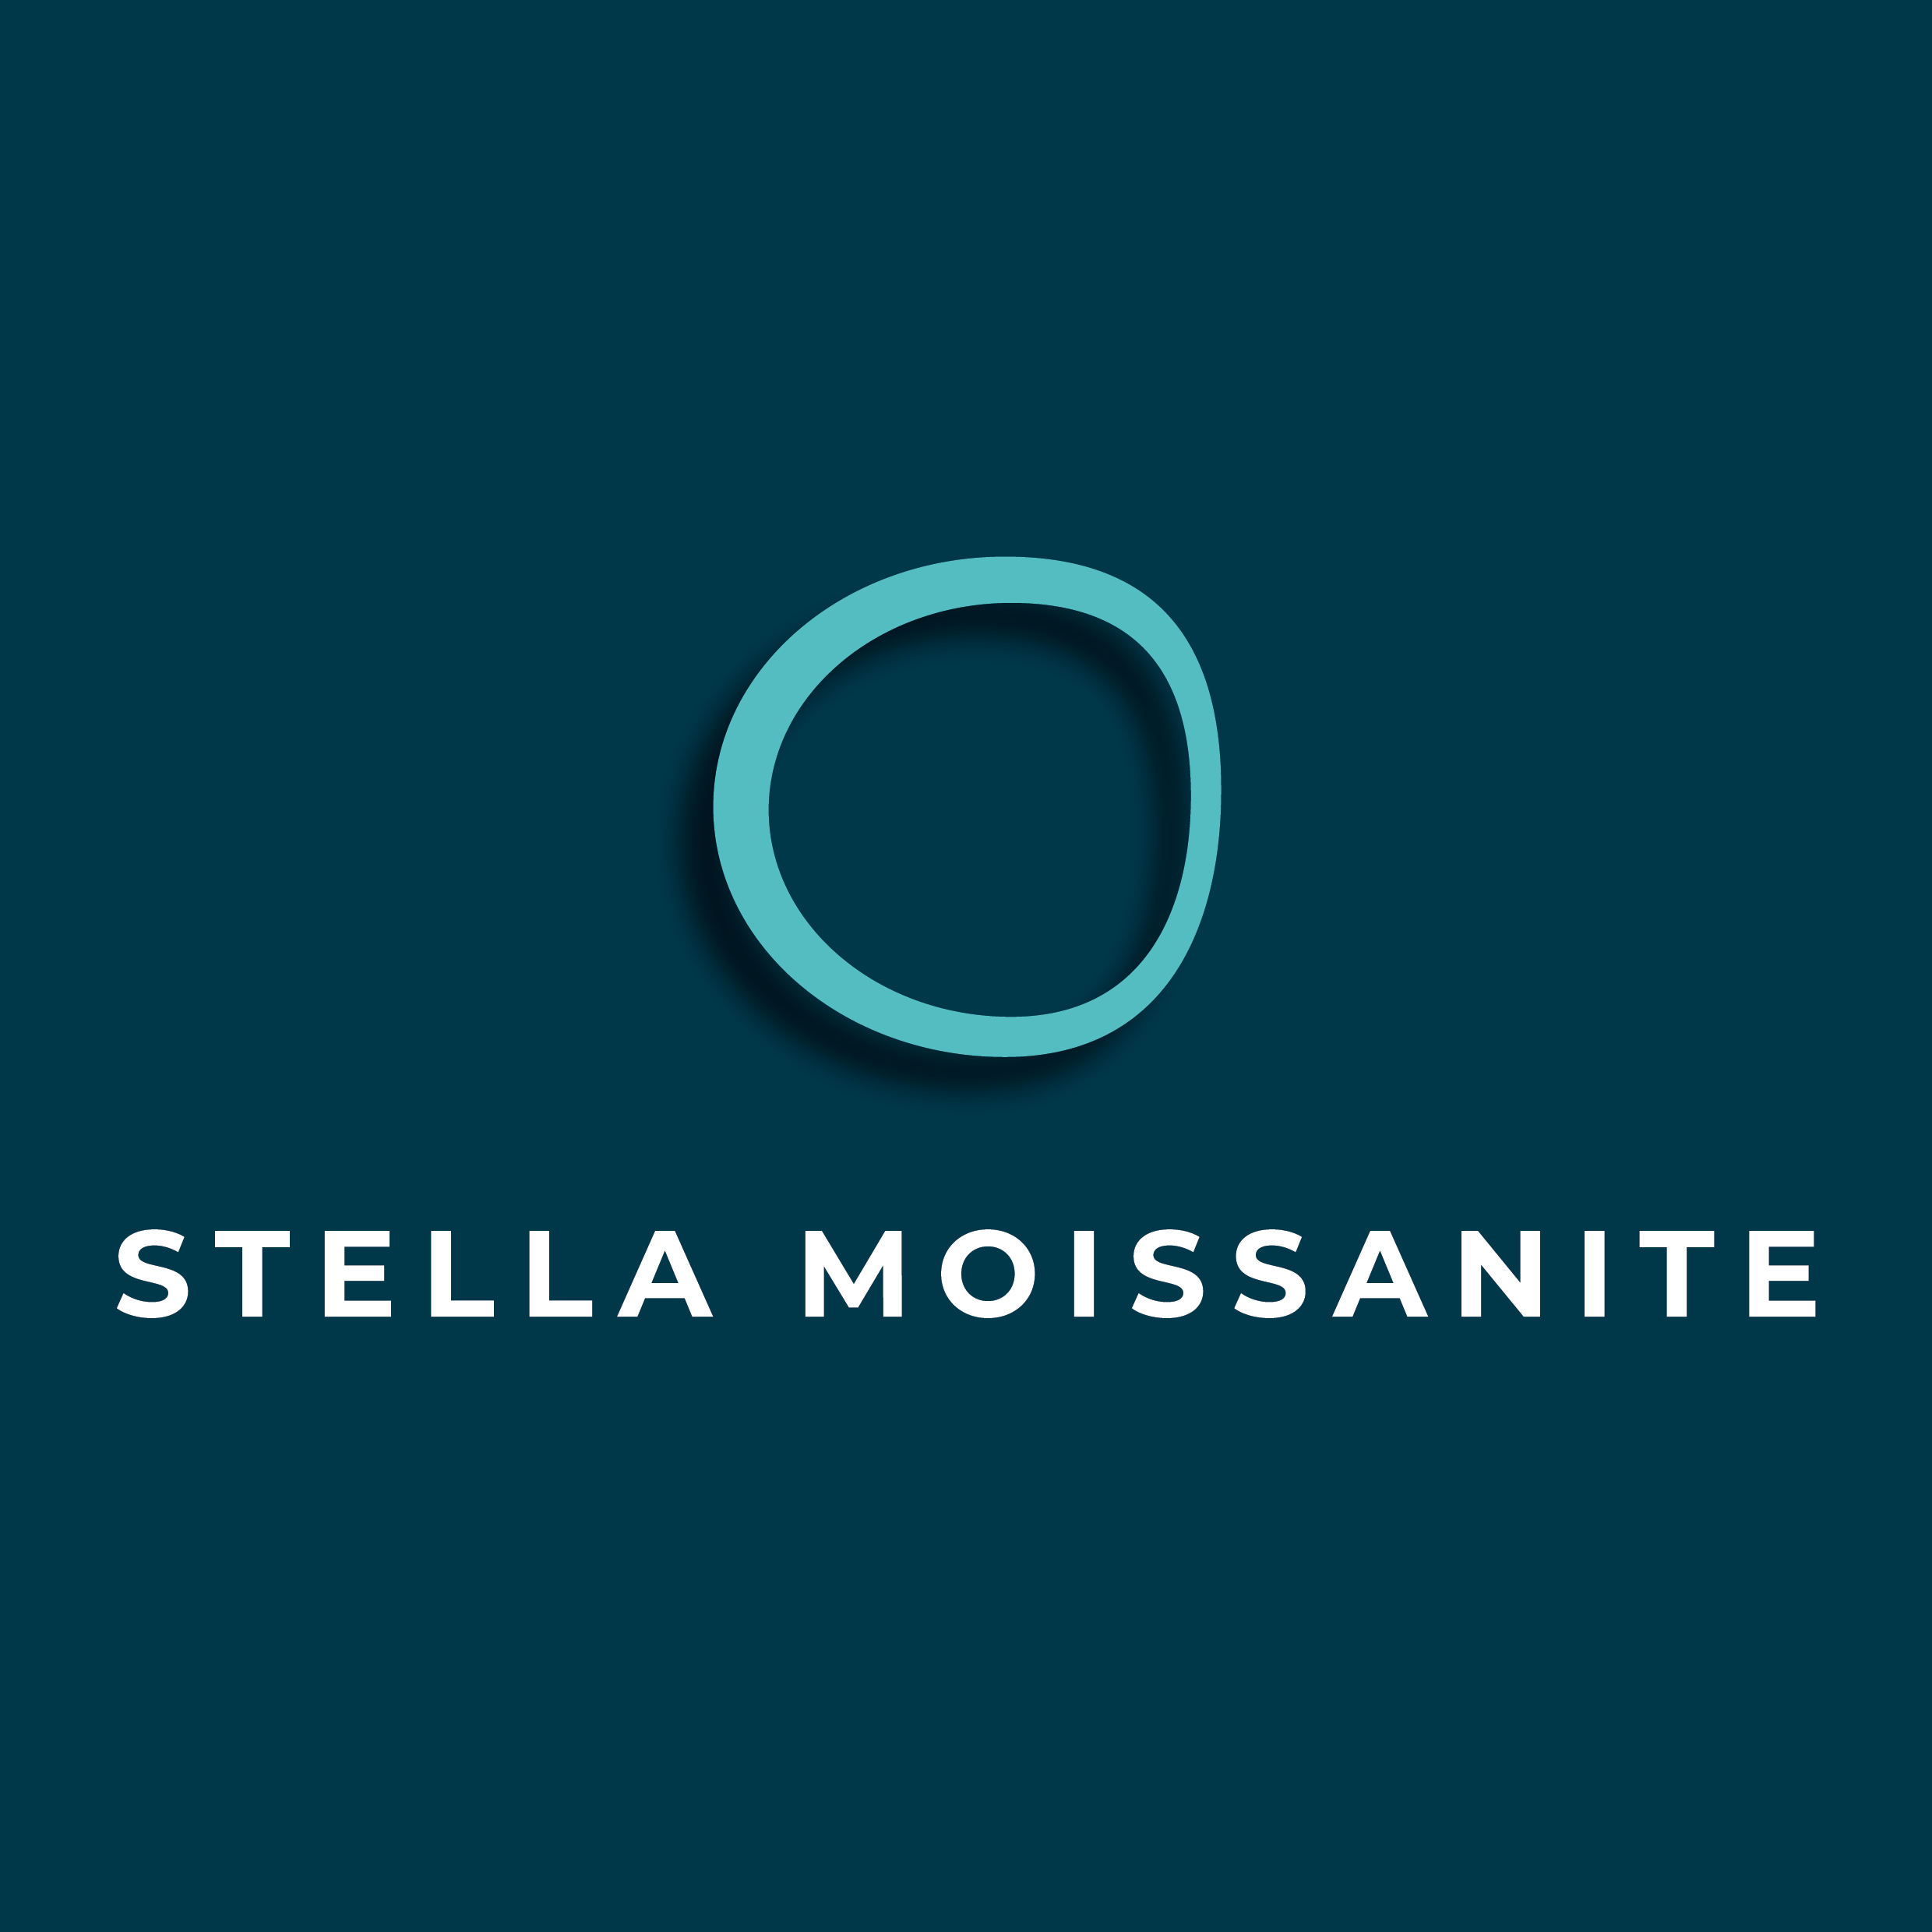 Stella Moissanite